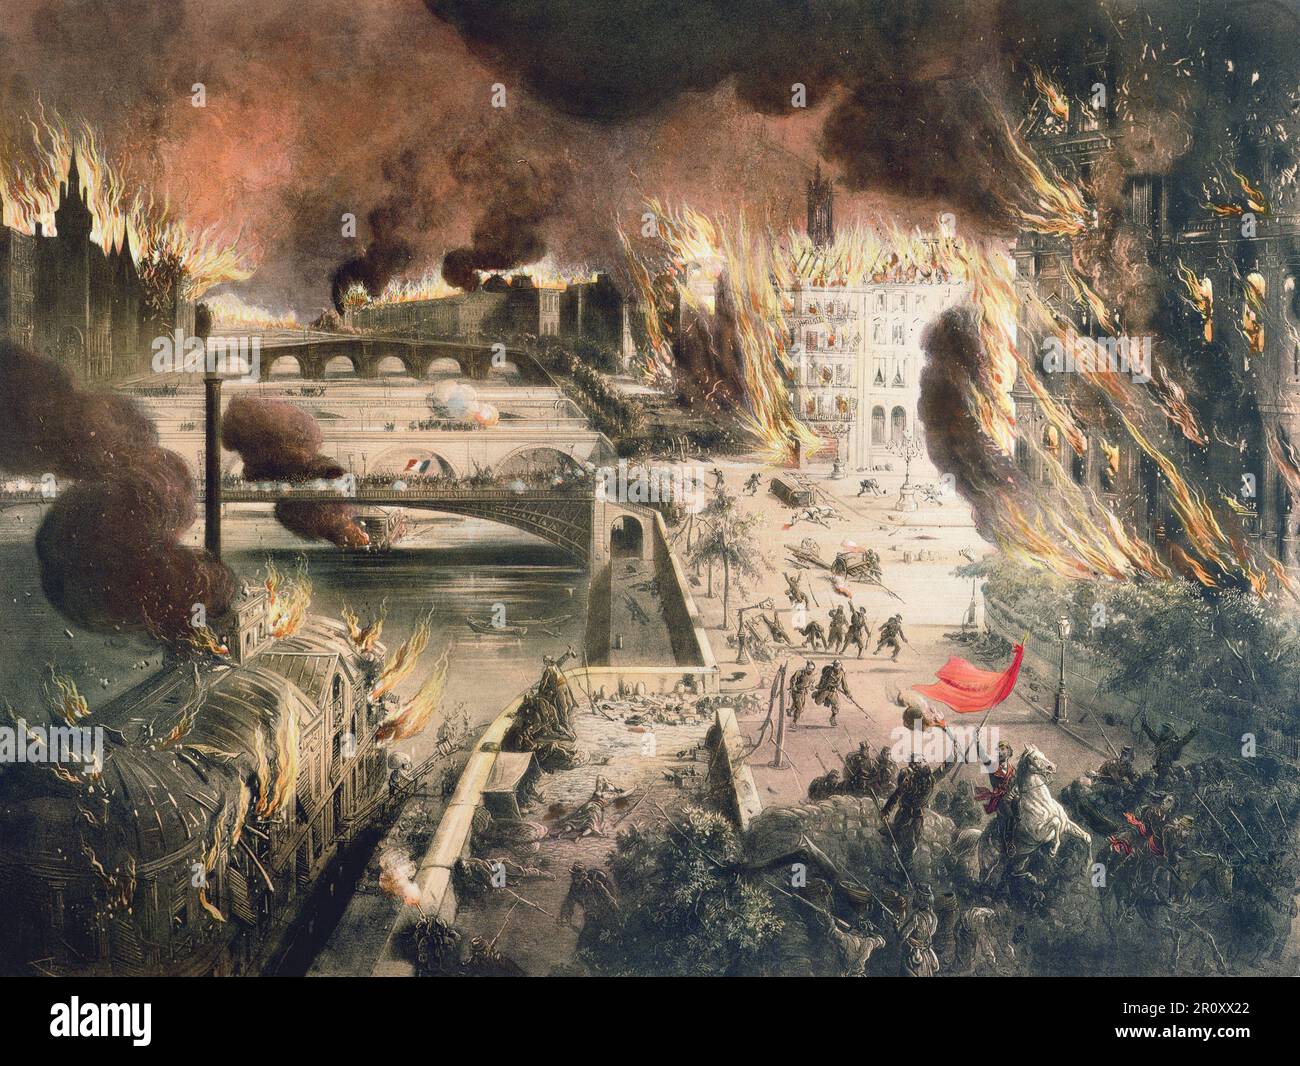 Anreidie de Paris Pendant la Commune - L'incendie de Paris dans la nuit du 24 au 25 Mai 1871 Stockfoto